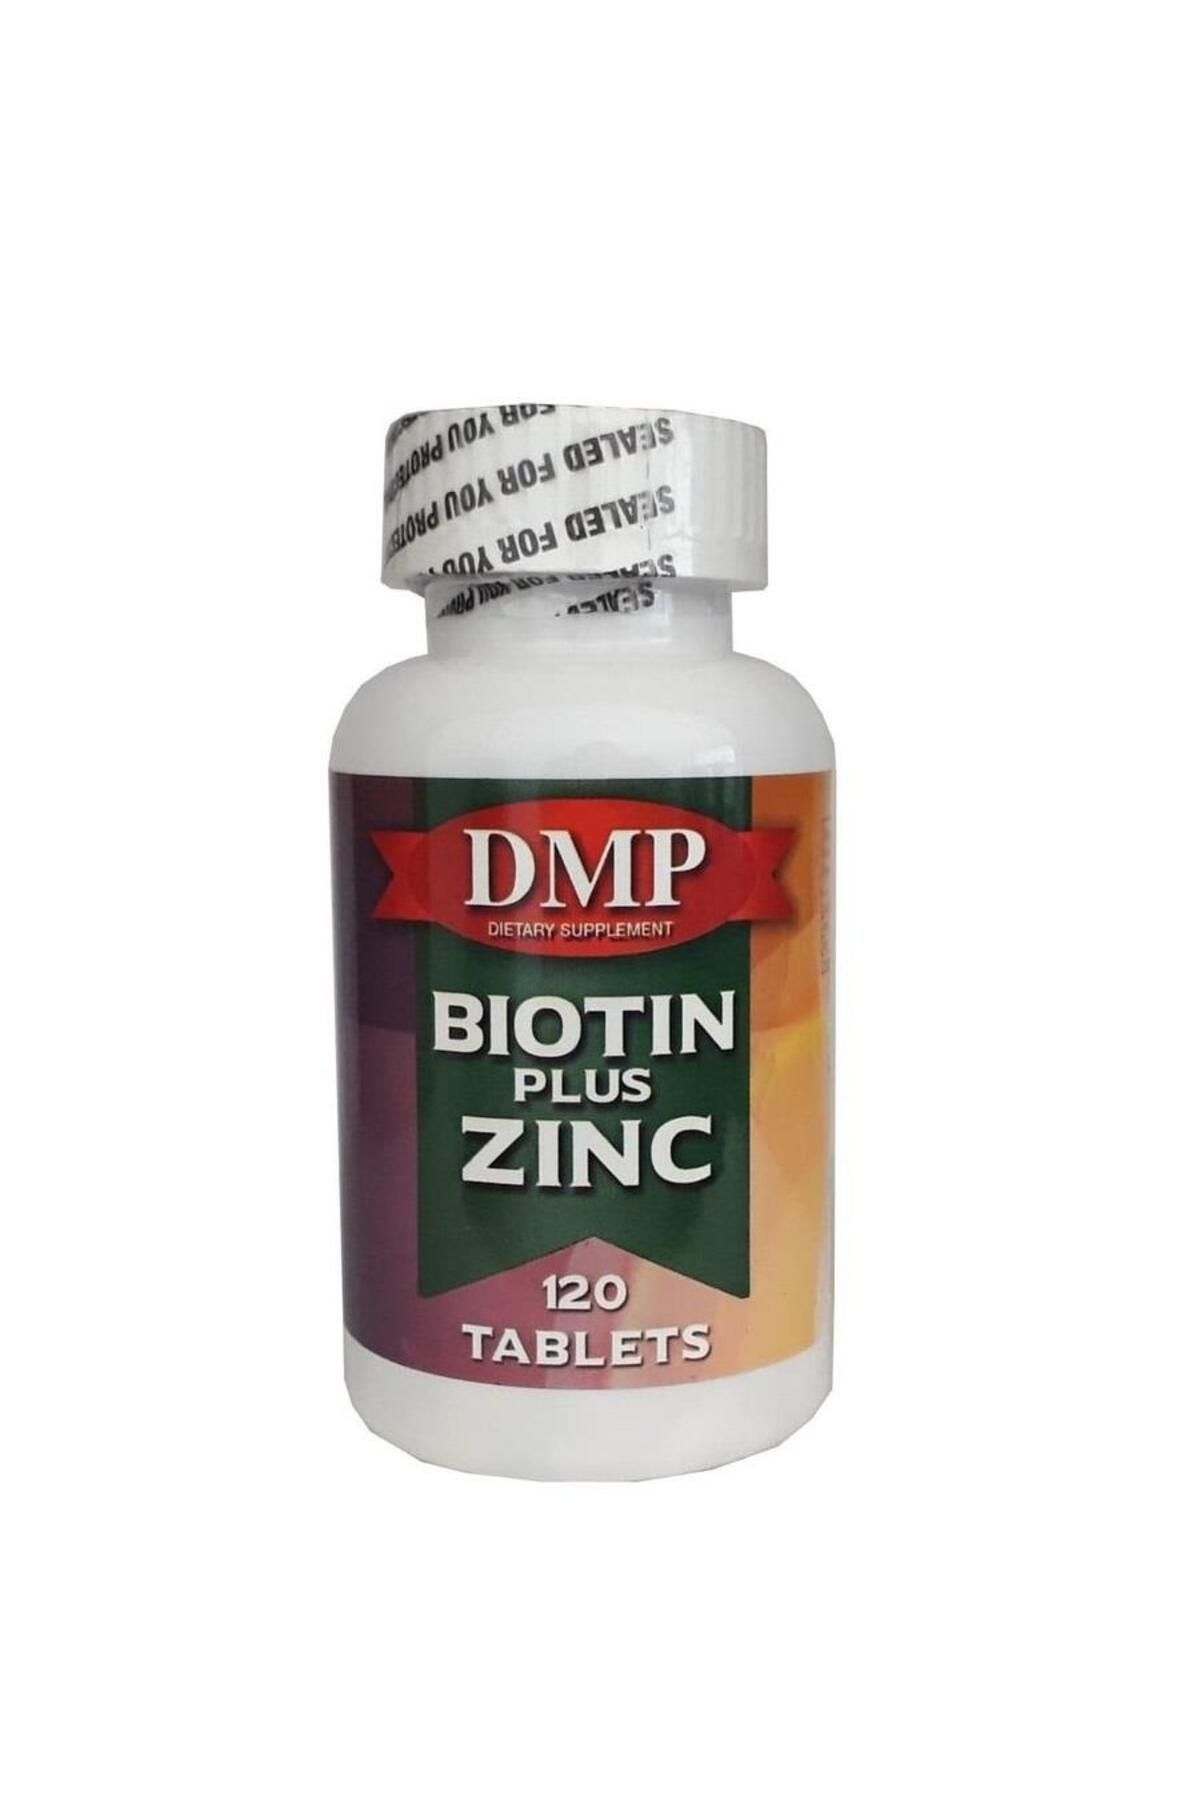 DMP Biotin Plus Zinc 120 Tablets